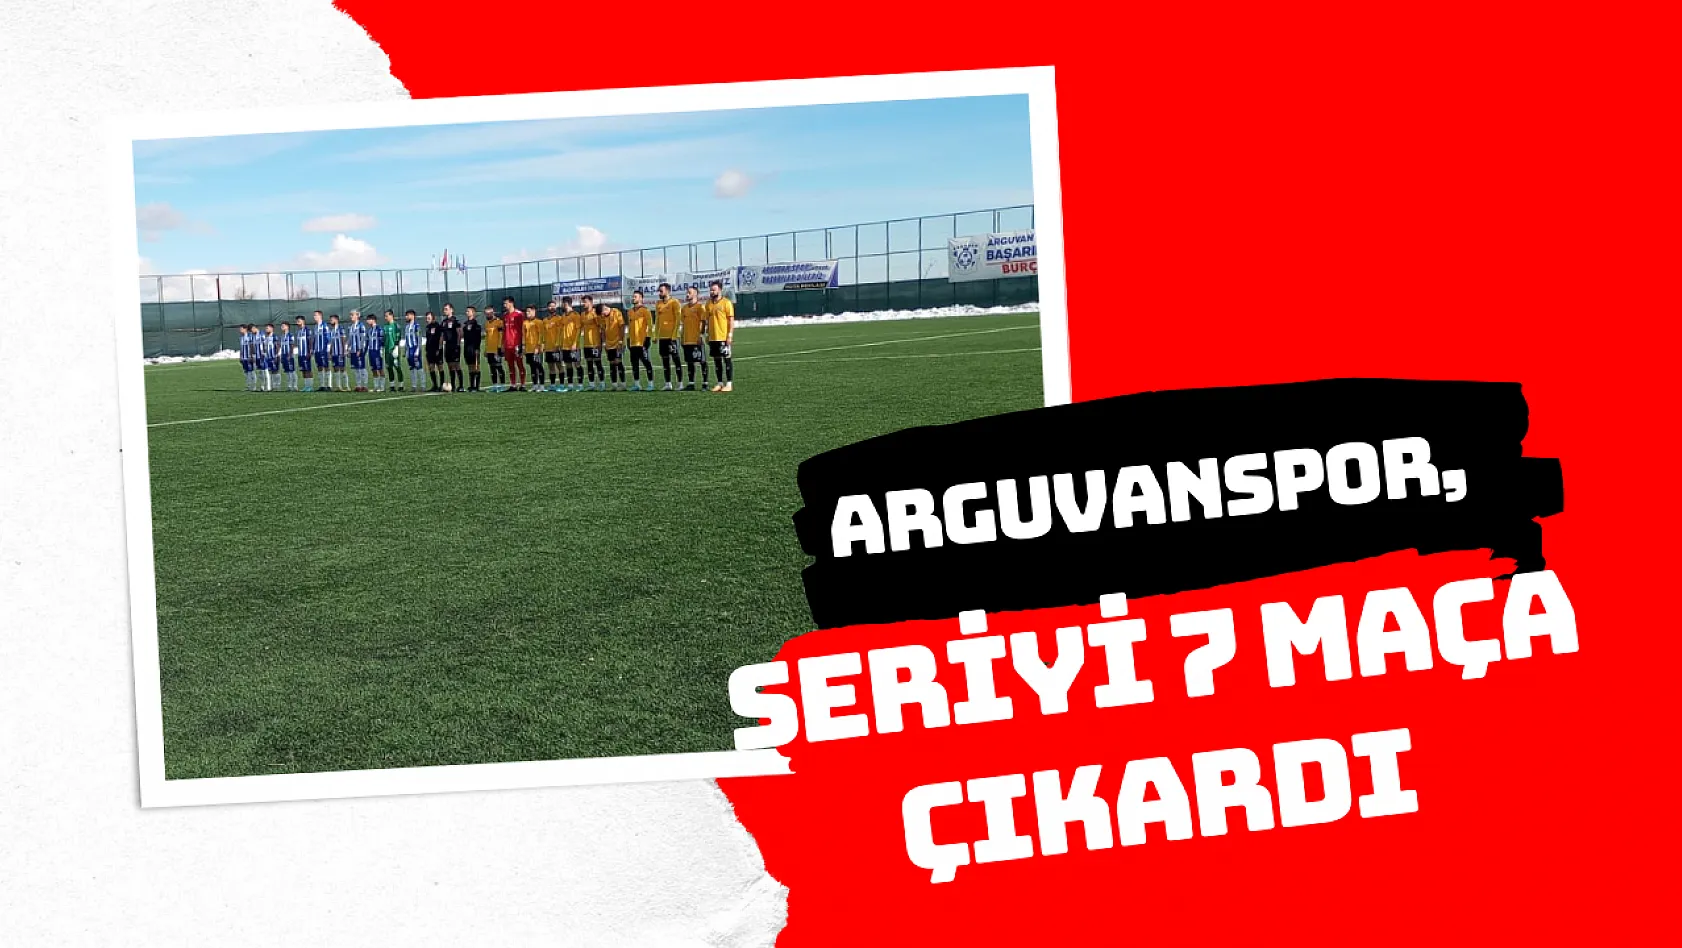 Arguvanspor, seriyi 7 maça çıkardı